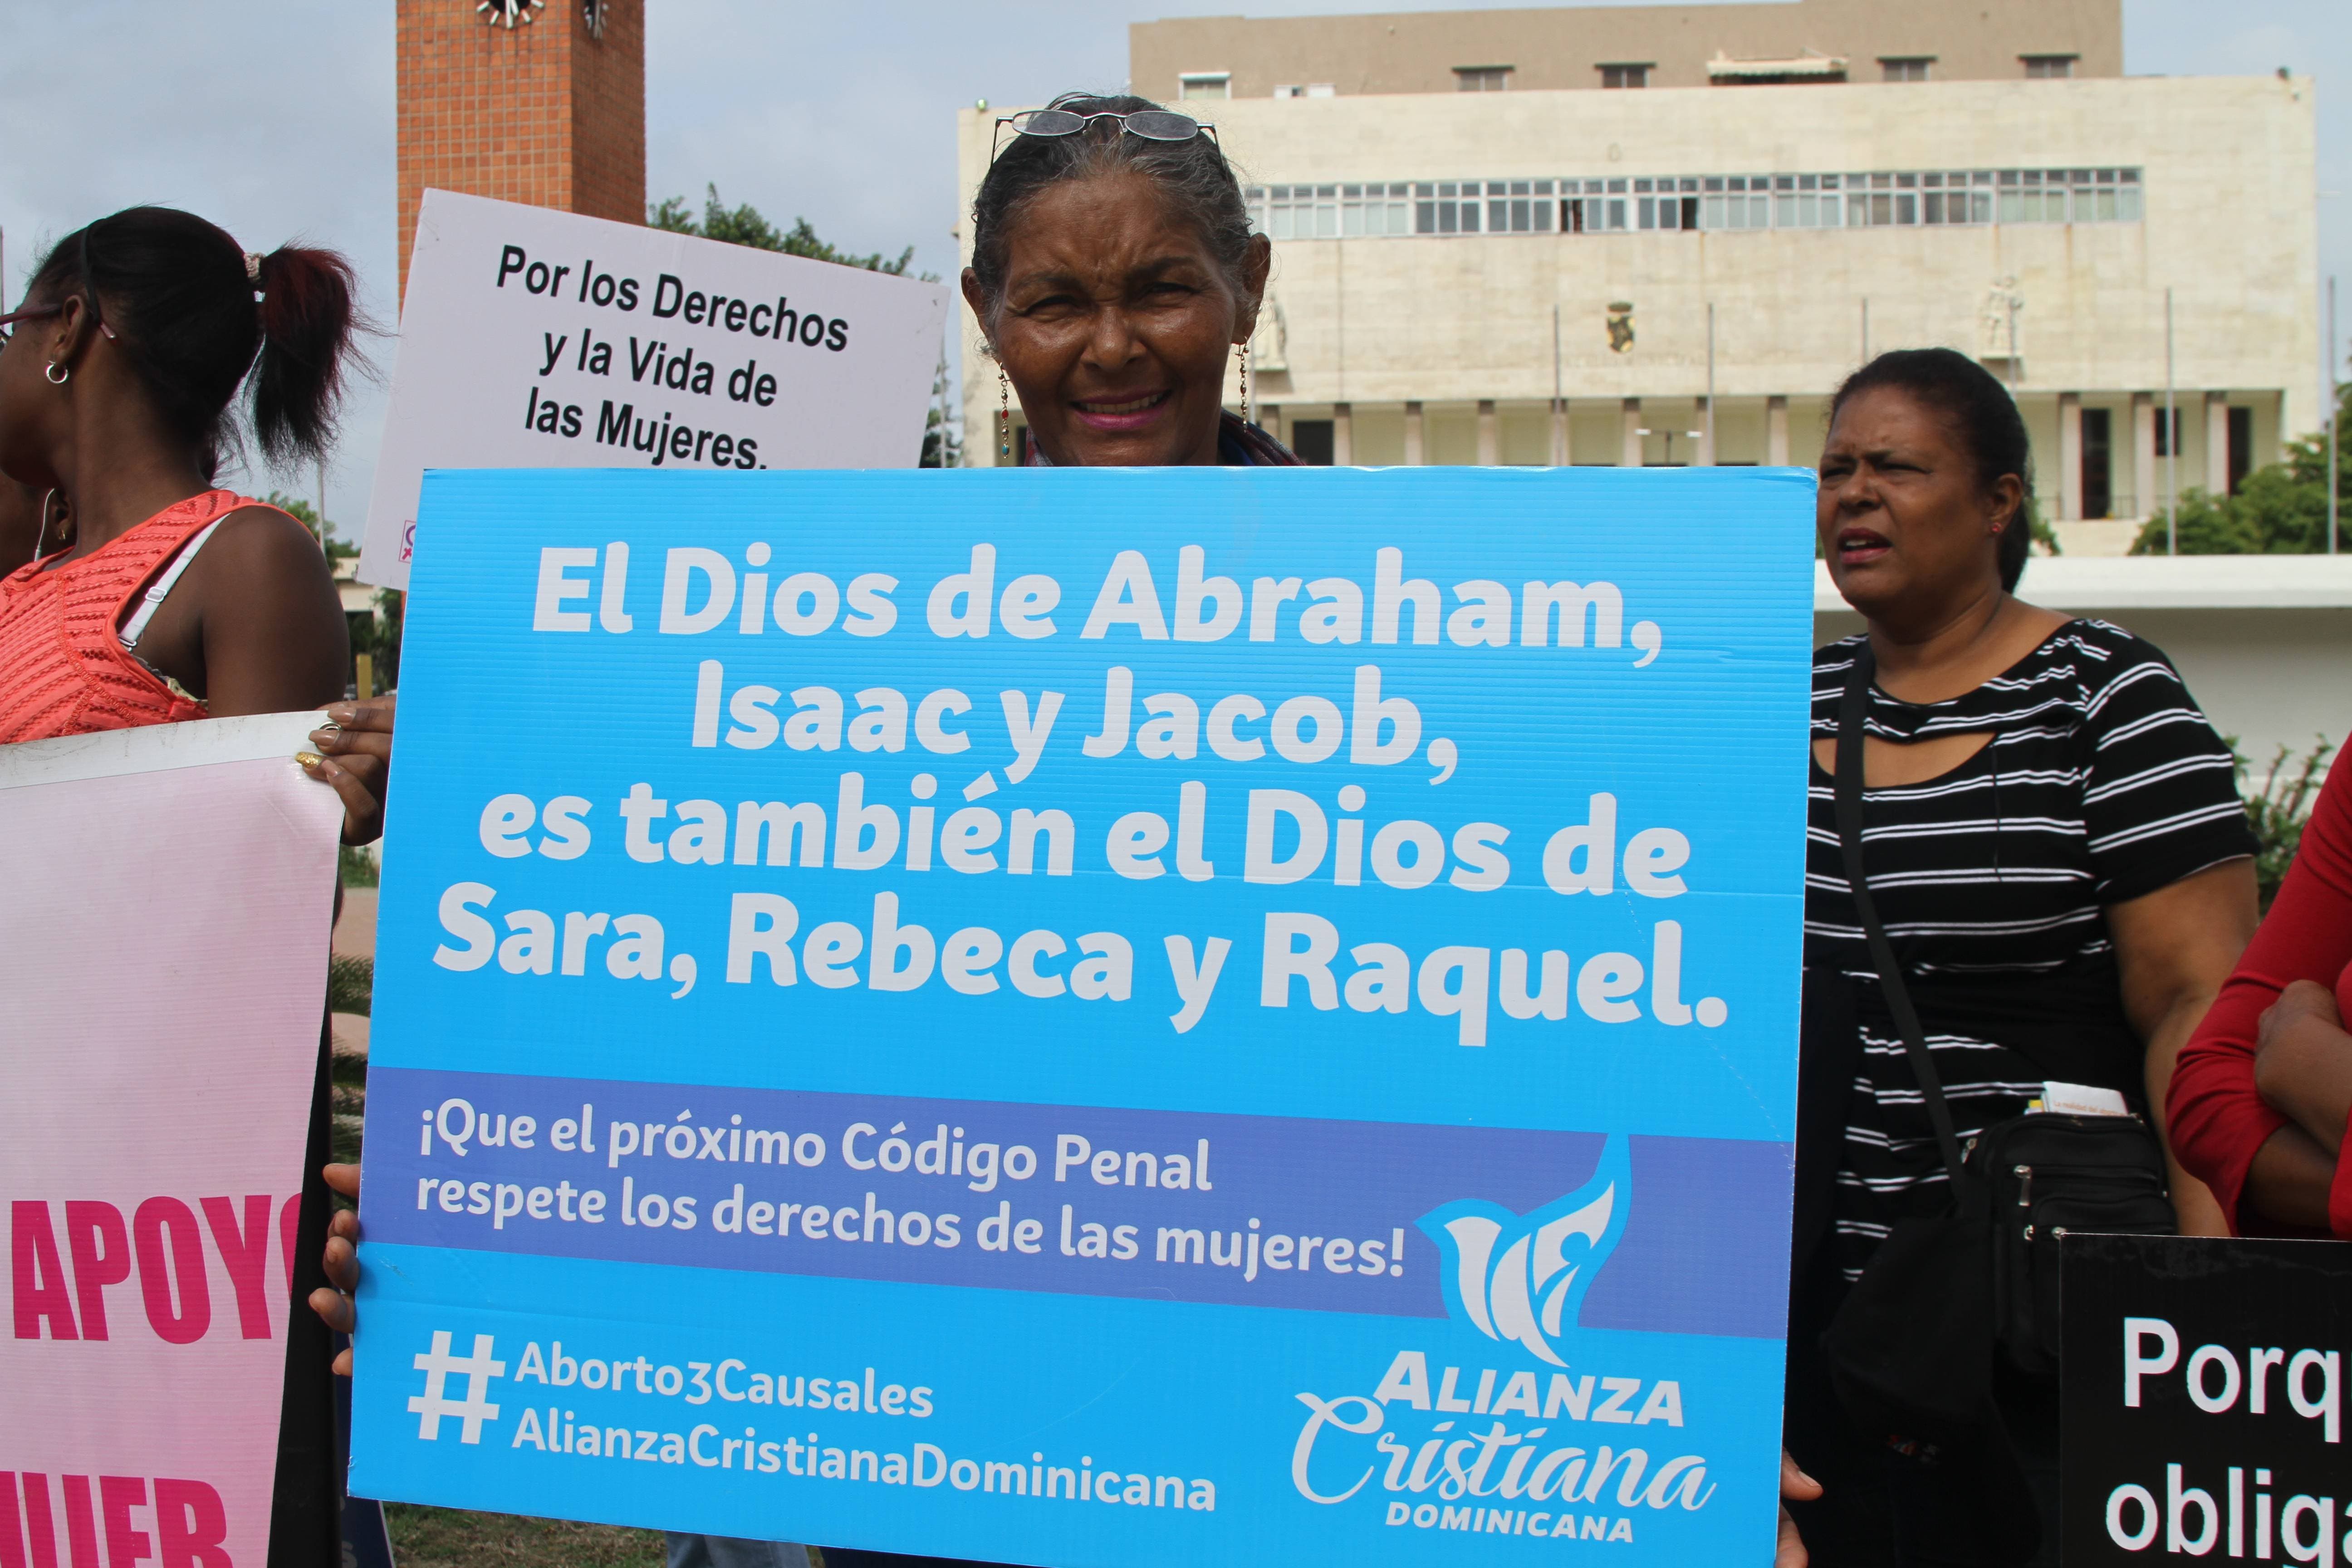 Alianza Cristiana Dominicana invita a participar en Caminata por la Vida, Salud y Dignidad de las Mujeres este domingo 15 de julio